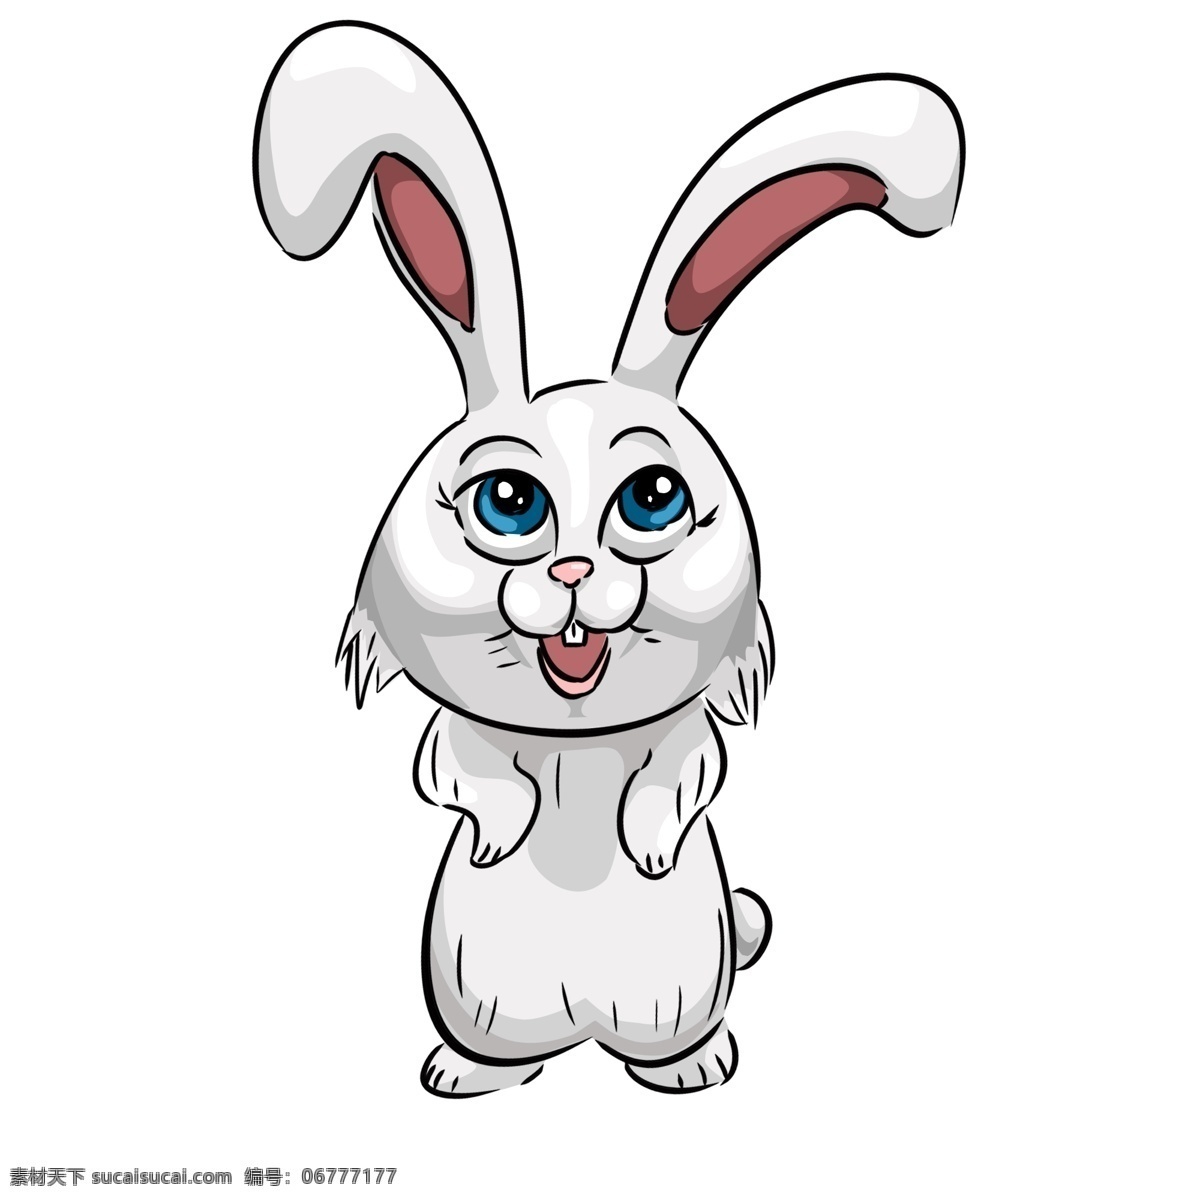 手绘兔 可爱兔子 卡通小白兔 可爱小白兔 矢量小白兔 口袋兔子 矢量兔子 兔子矢量 卡通矢量兔子 口袋卡通兔子 兔子花 蝴蝶结兔子 卡通 矢量 兔子 小白兔 兔兔 可爱 卡通设计